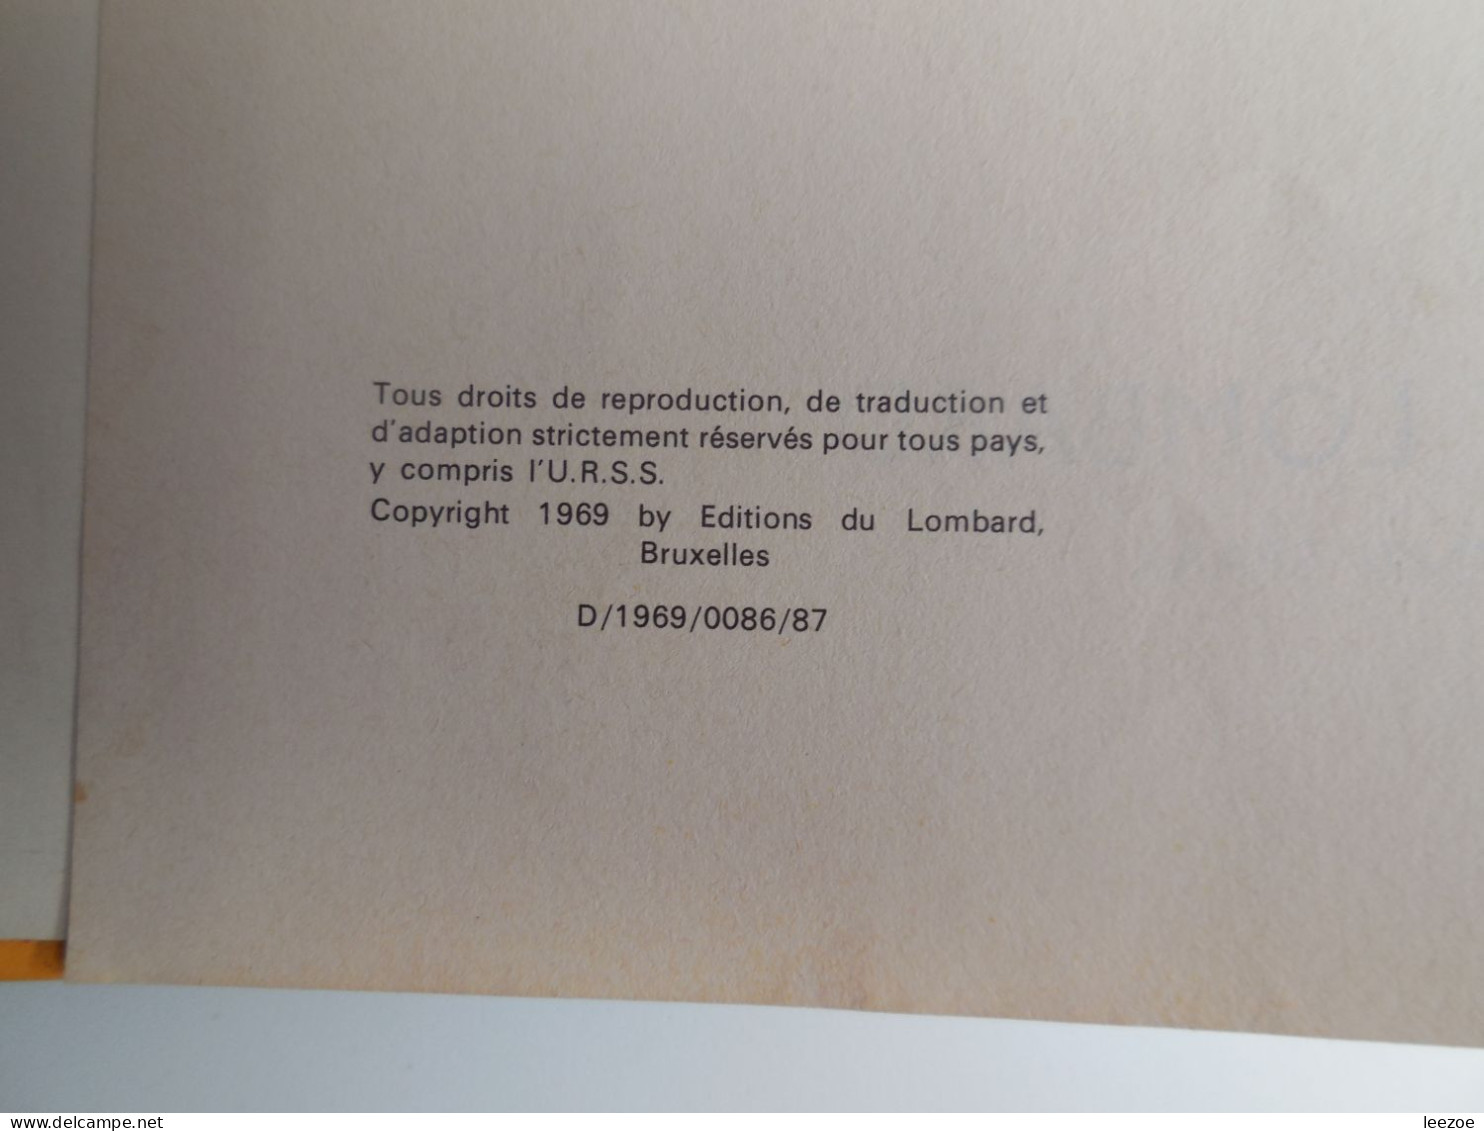 EO BD DAN COOPER LES TIGRES DE MER 1969, de ALBERT WEINBERG, une histoire du journal Tintin...N5..150